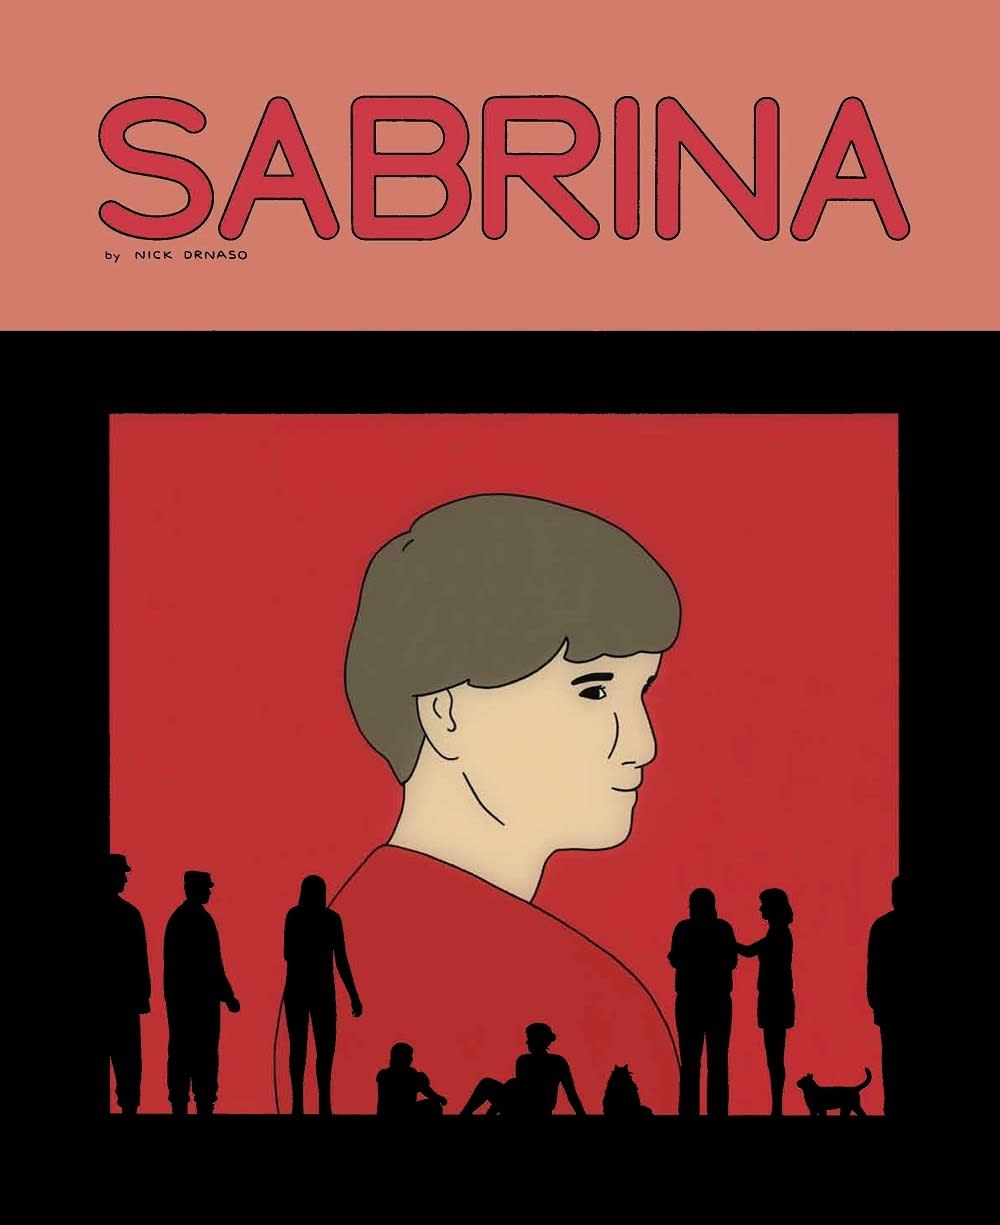 Nick Drnason tekemän Sabrina -sarjakuvan kansi.